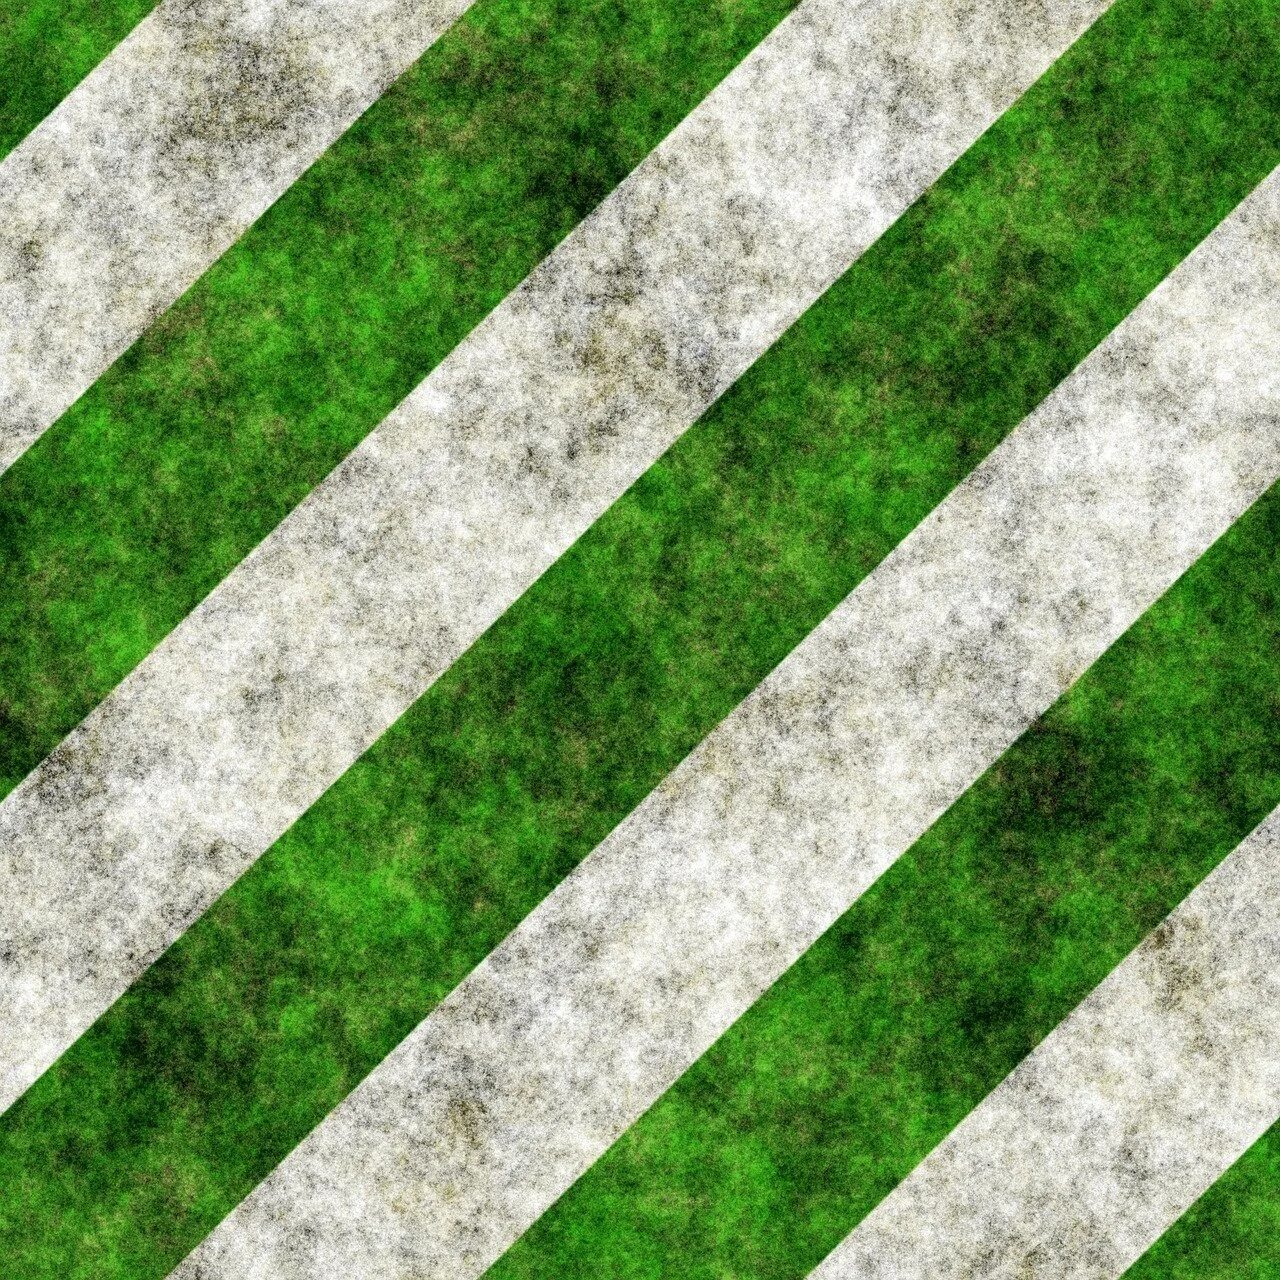 Три зеленых полосы. Зеленая полоса. Зеленая полоска. Зеленый пол. Зеленый фон с полосками.